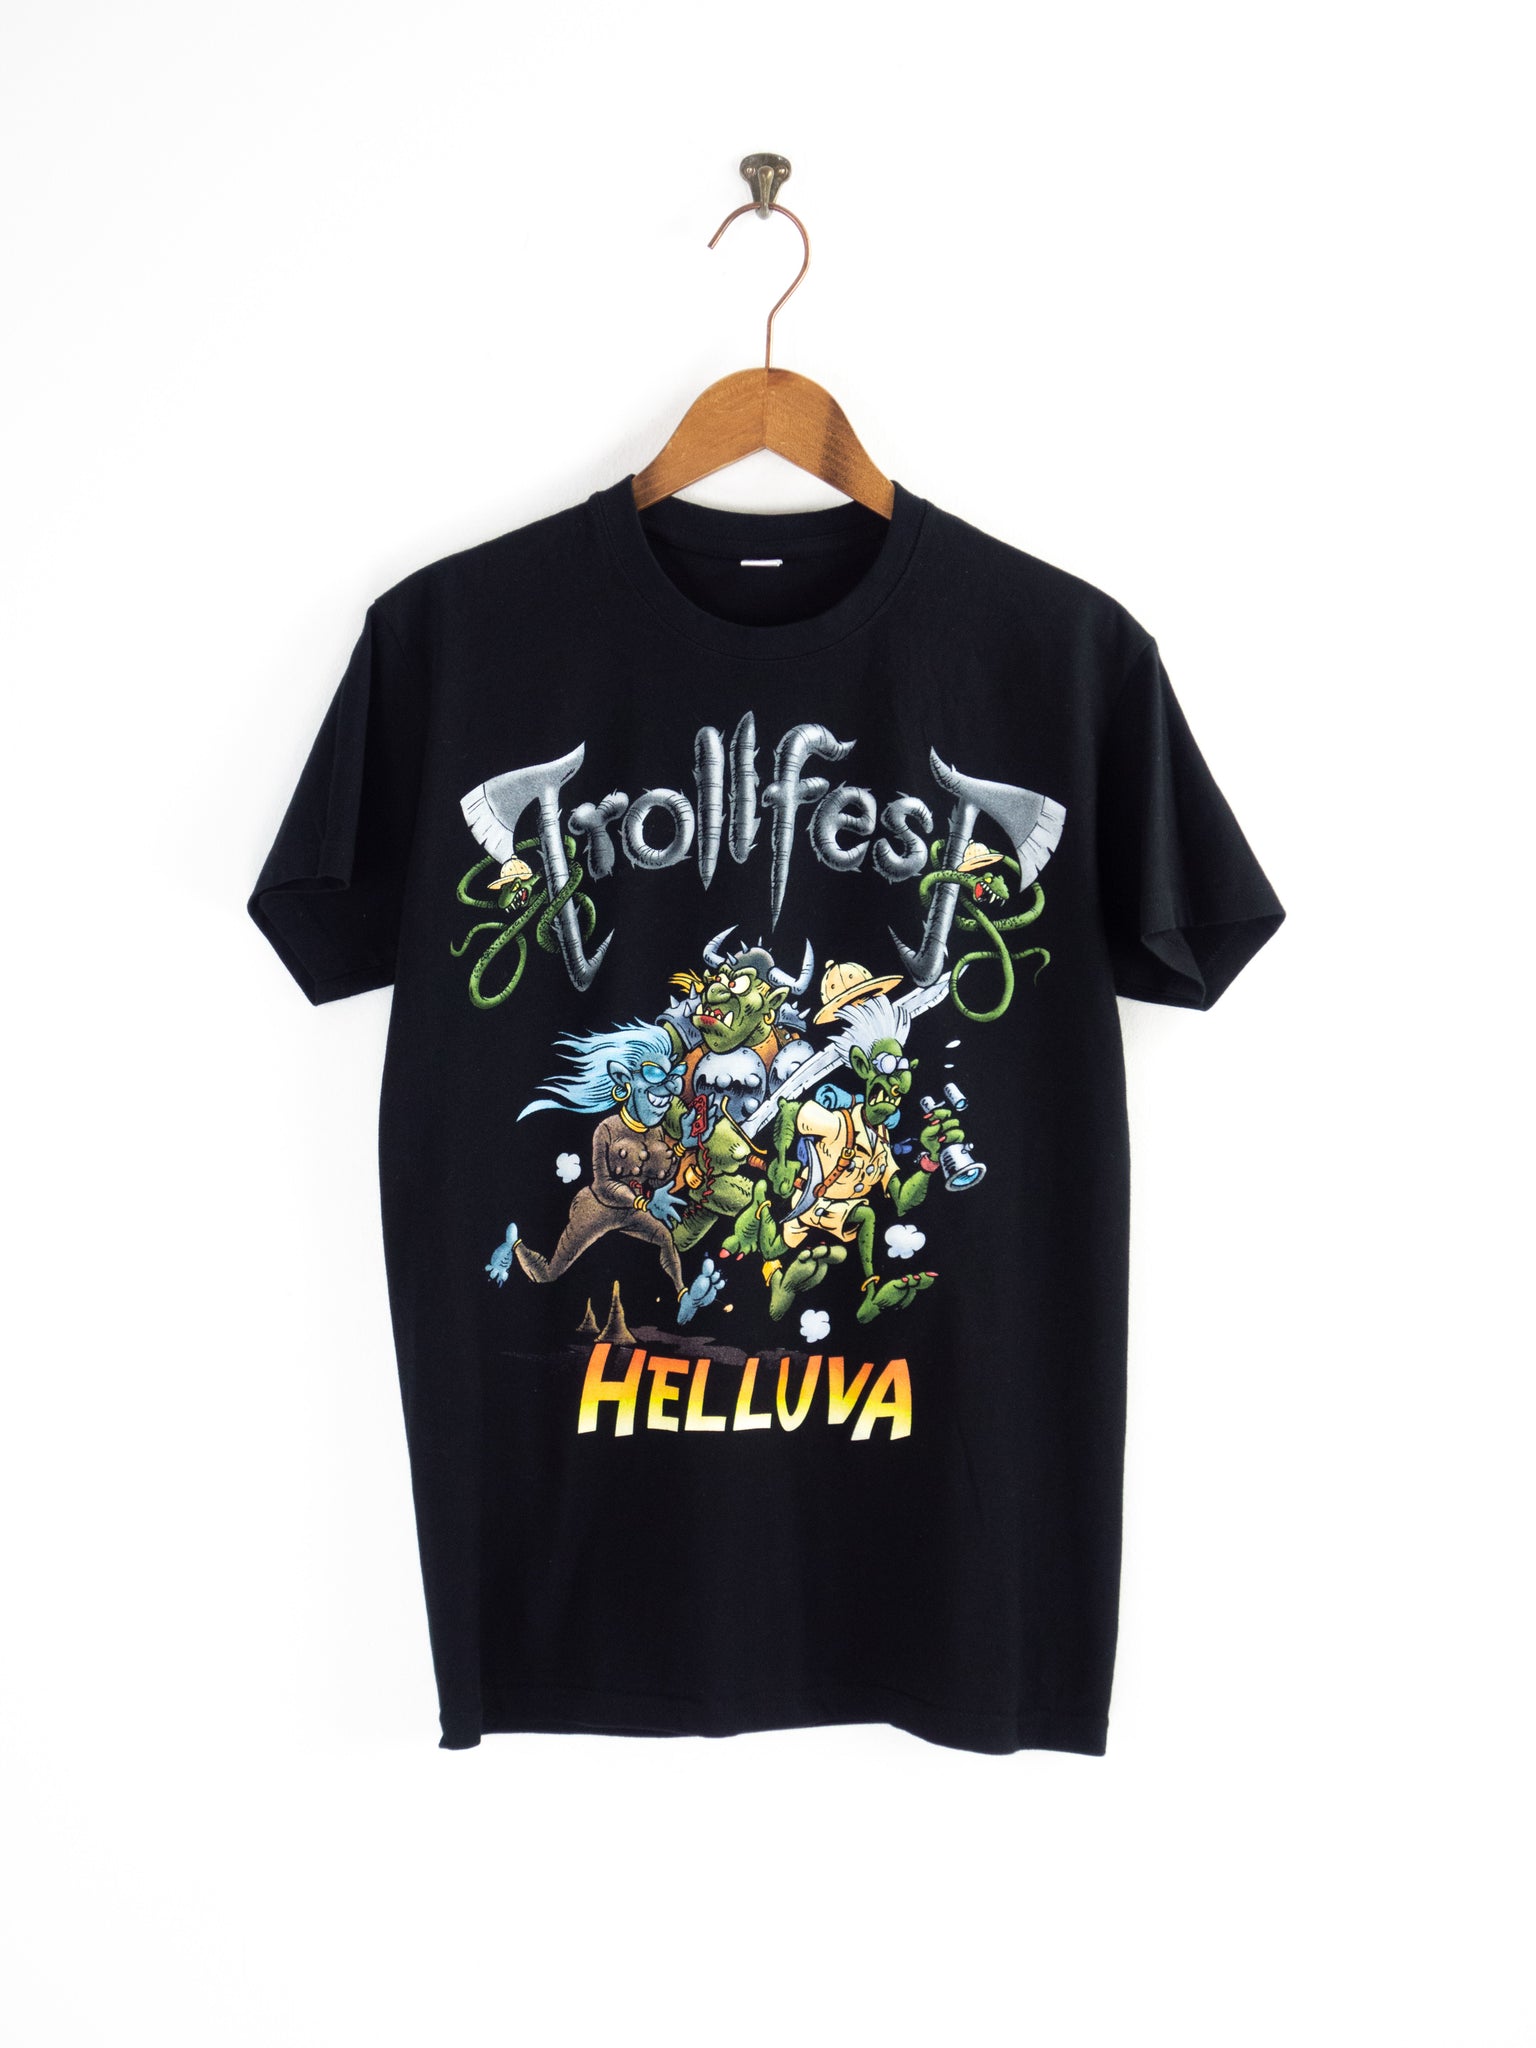 Trollfest Festival T-Shirt S/M